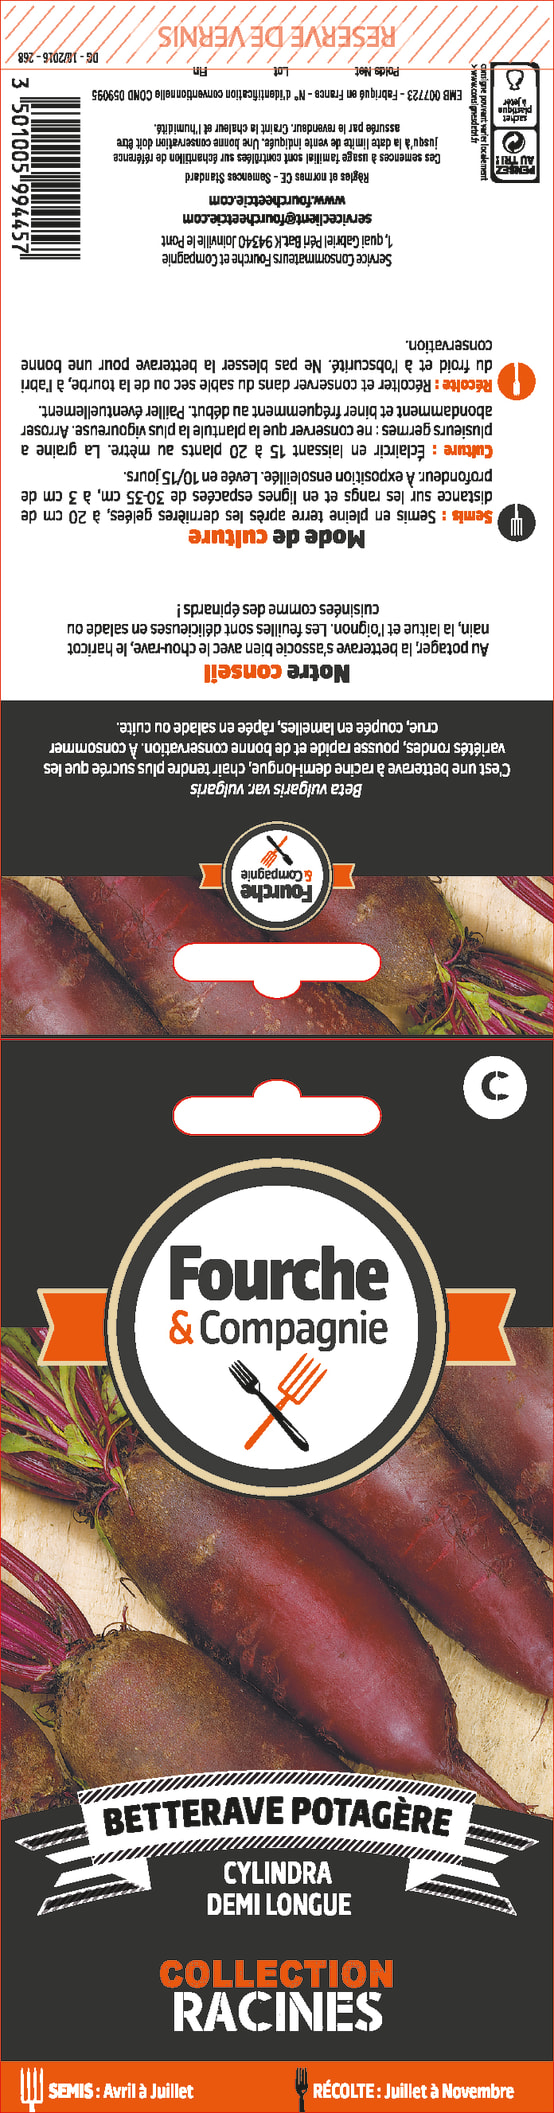 Fourche & Compagnie - Graines de Betterave potagère cylindra - Image 1